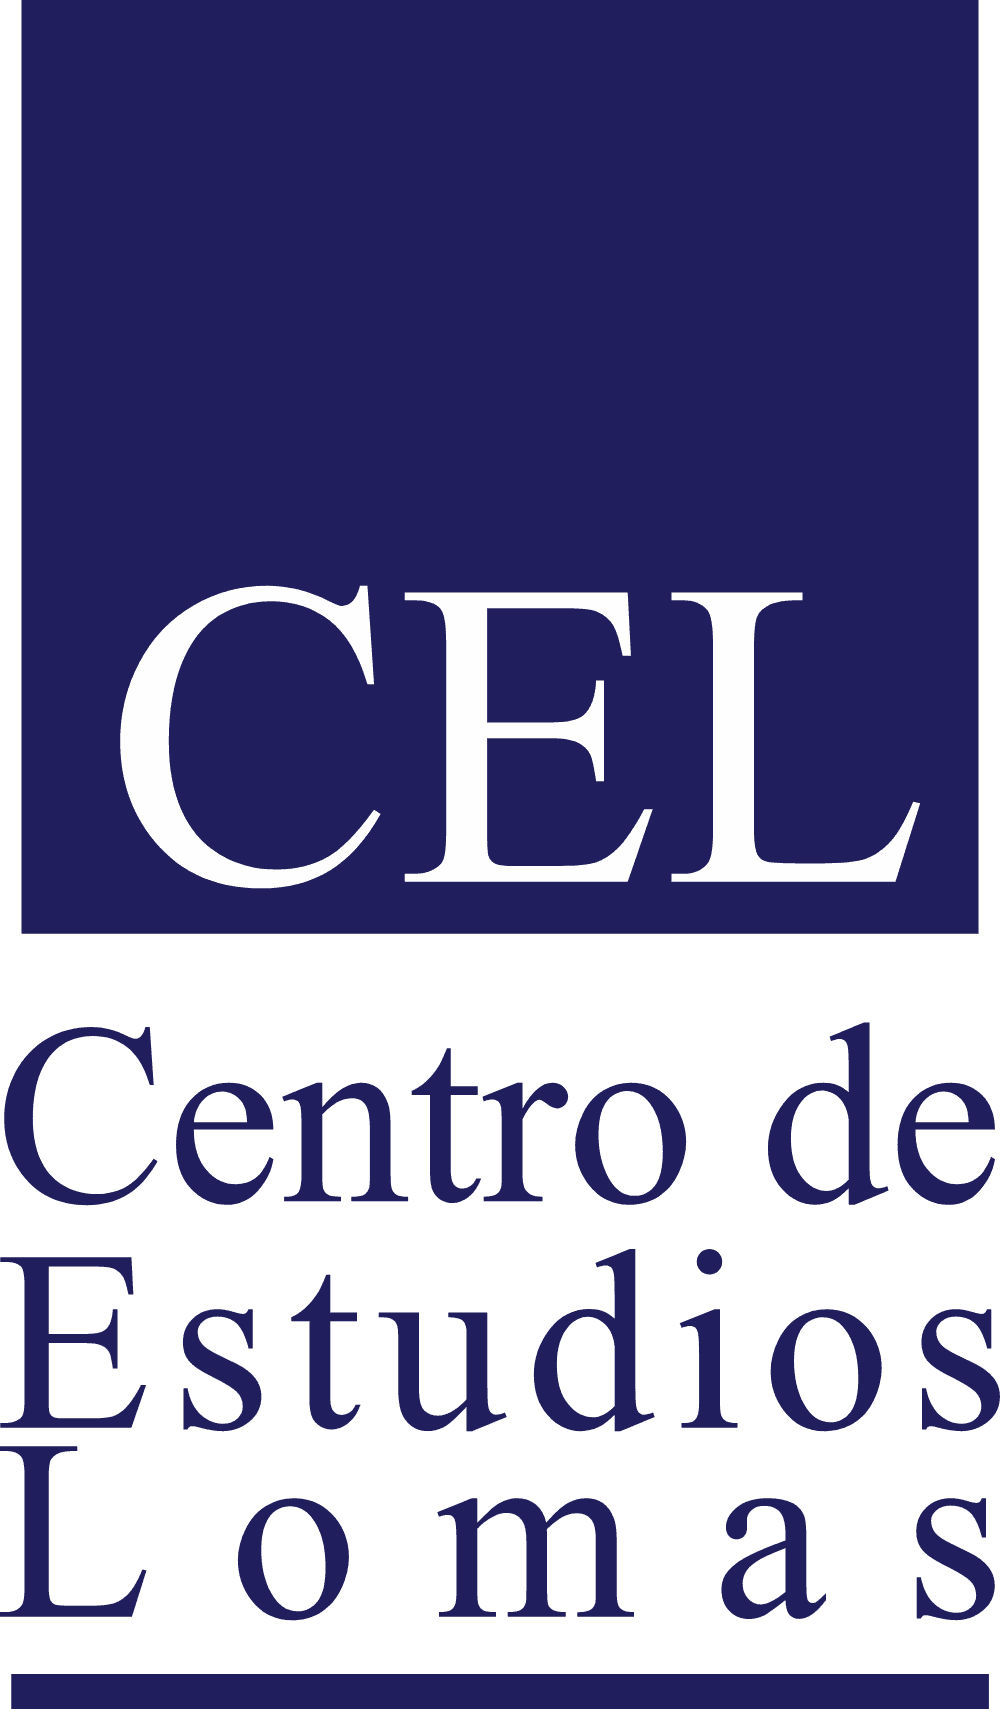 CEL Logo download